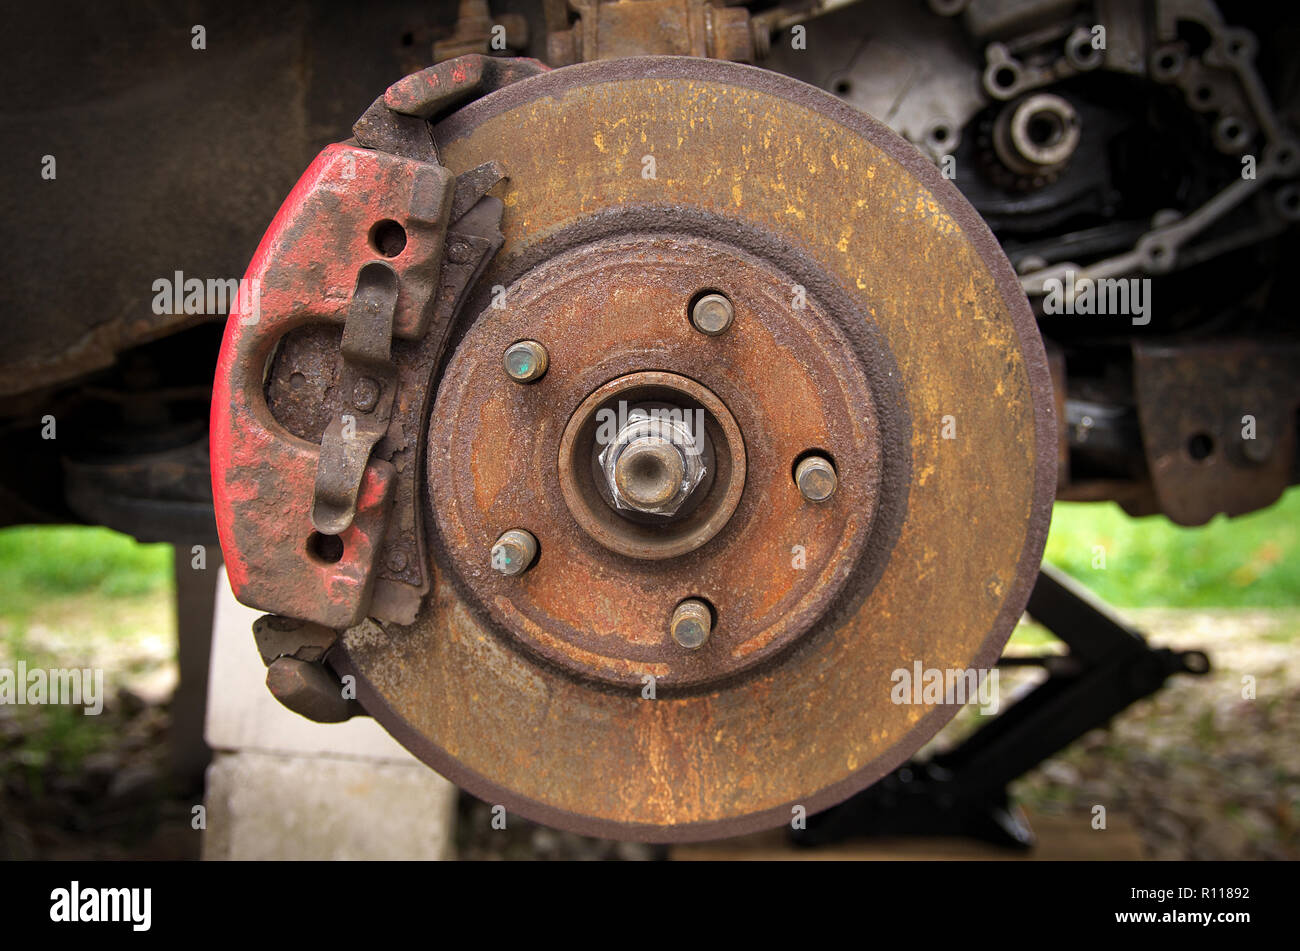 Auto Bremsen hinten Rusty Stockfotografie - Alamy